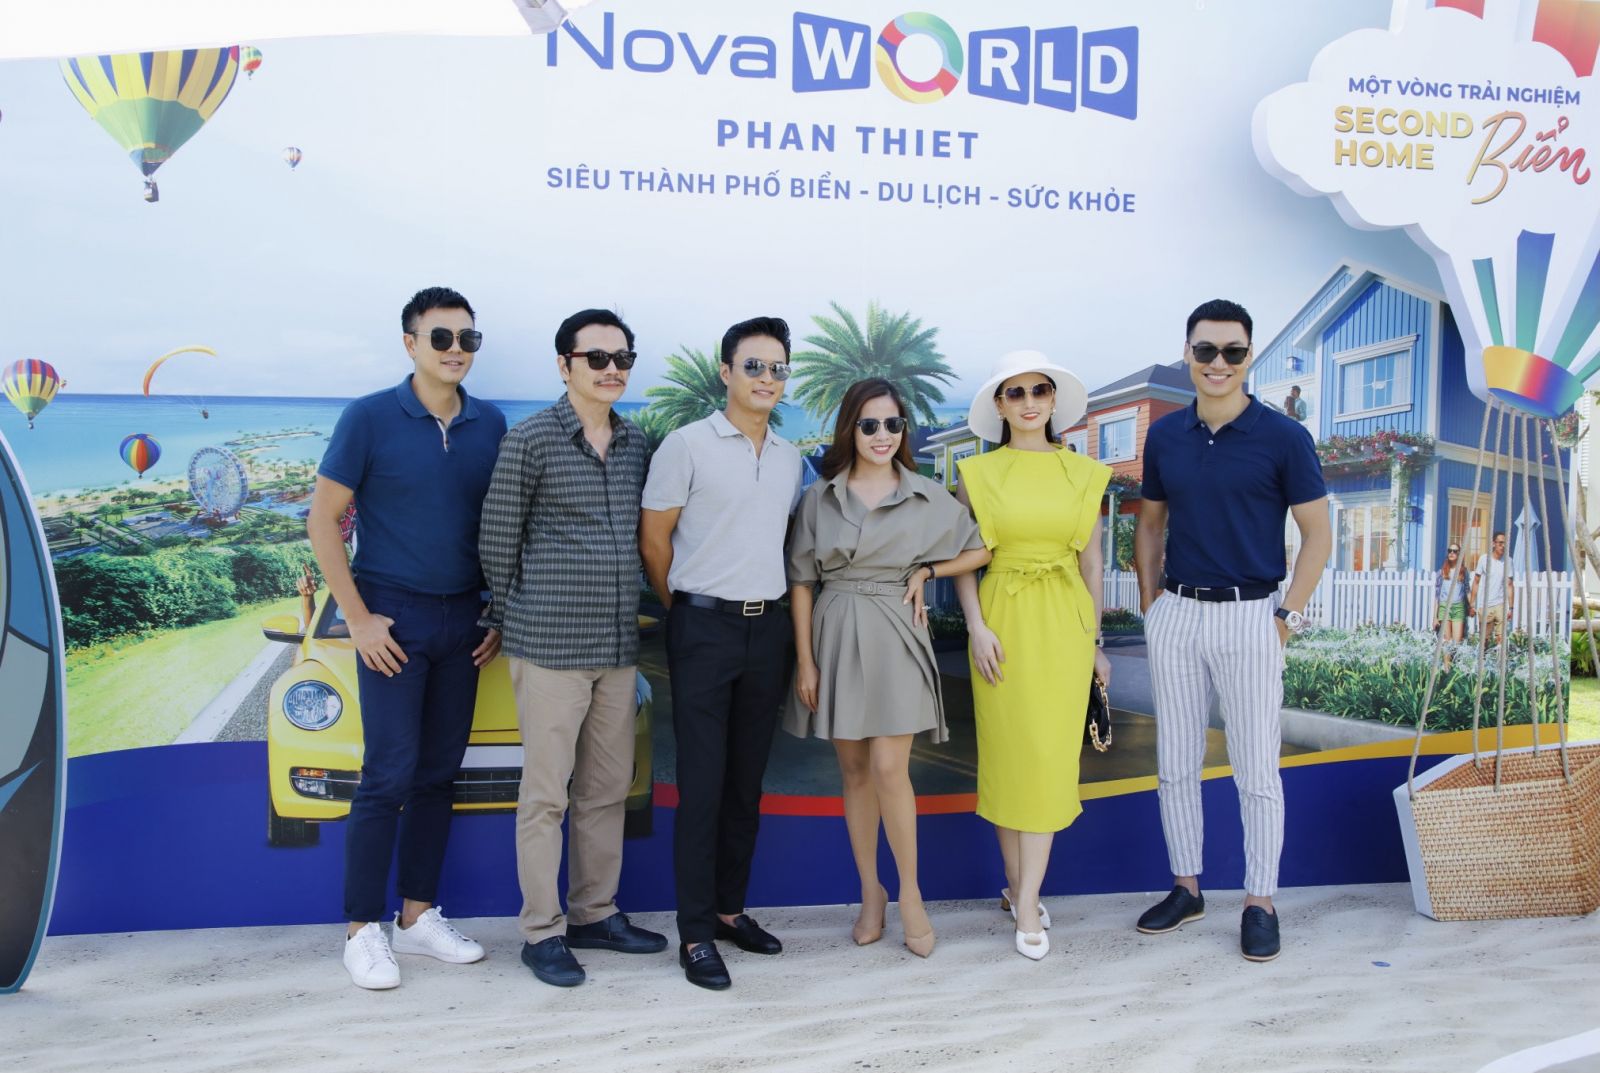 Tuấn Tú cùng nhiều nghệ sỹ miền Bắc đã có dịp tham quan NovaWorld Phan Thiet vào năm ngoái.